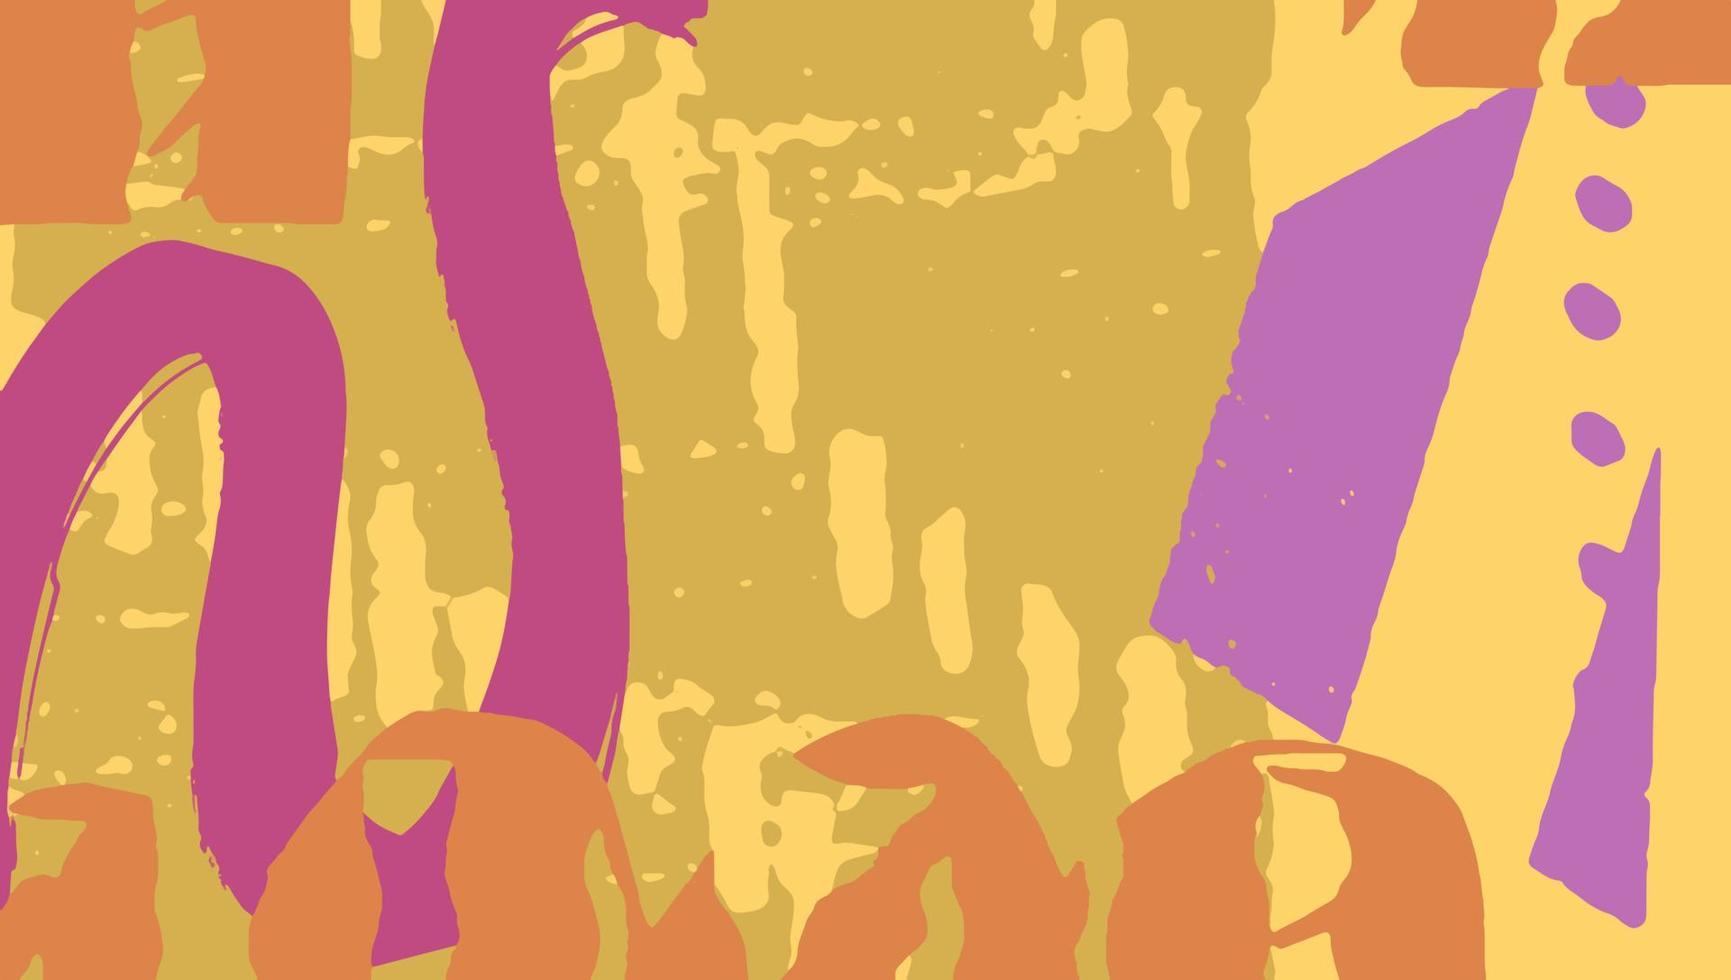 künstlerisch abstrakt Hintergrund mit Pinselstrich Textur malen, schmutzig Kunst Fantasie gut zum Abdeckung, Einladung, Banner, Plakat, Broschüre, Poster, Karte, Flyer und andere. vektor